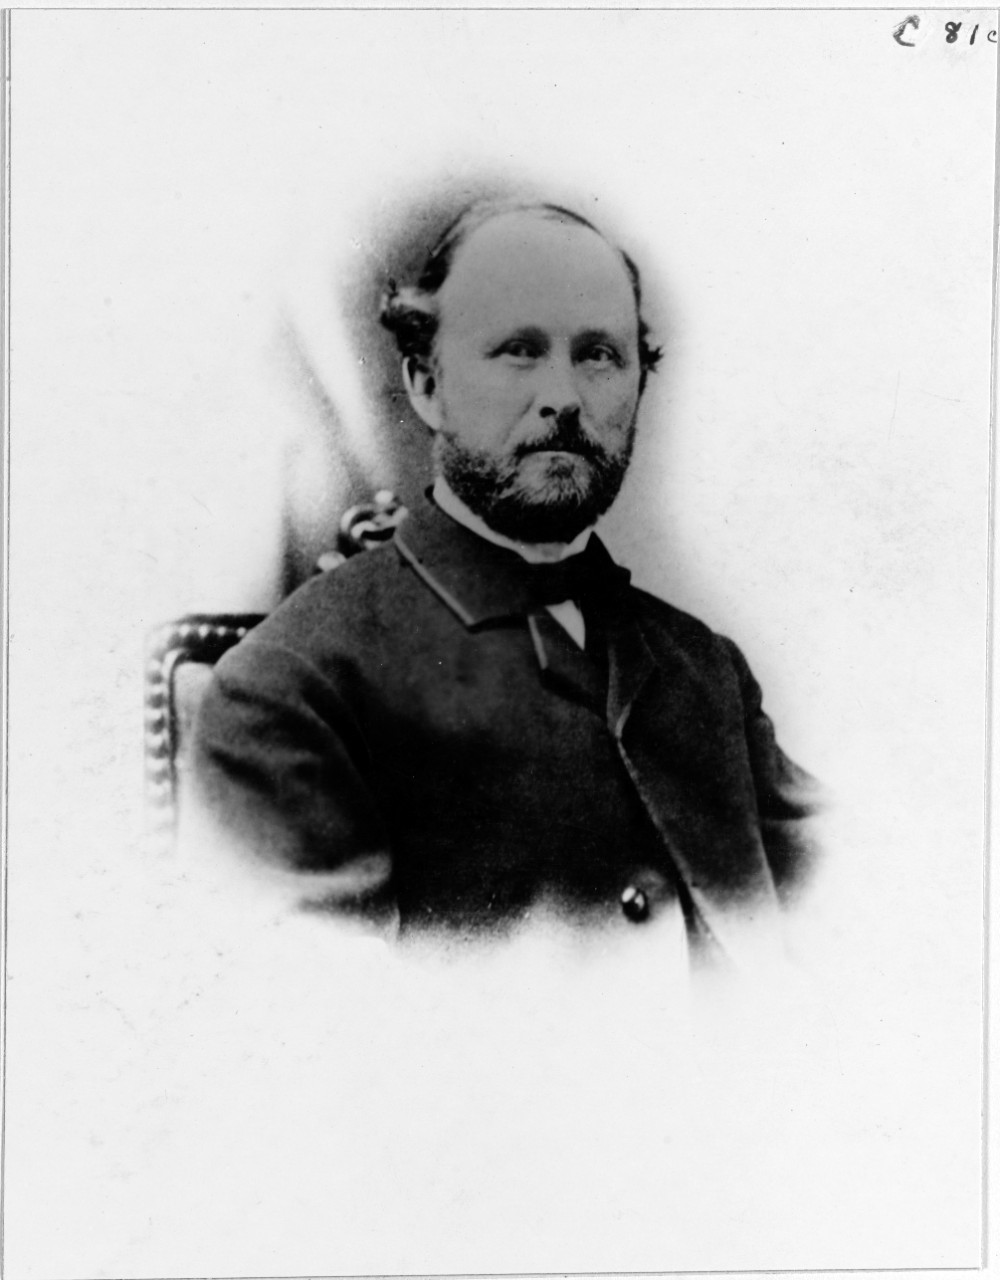 Rear Admiral Donald Mc. Fairfax, USN